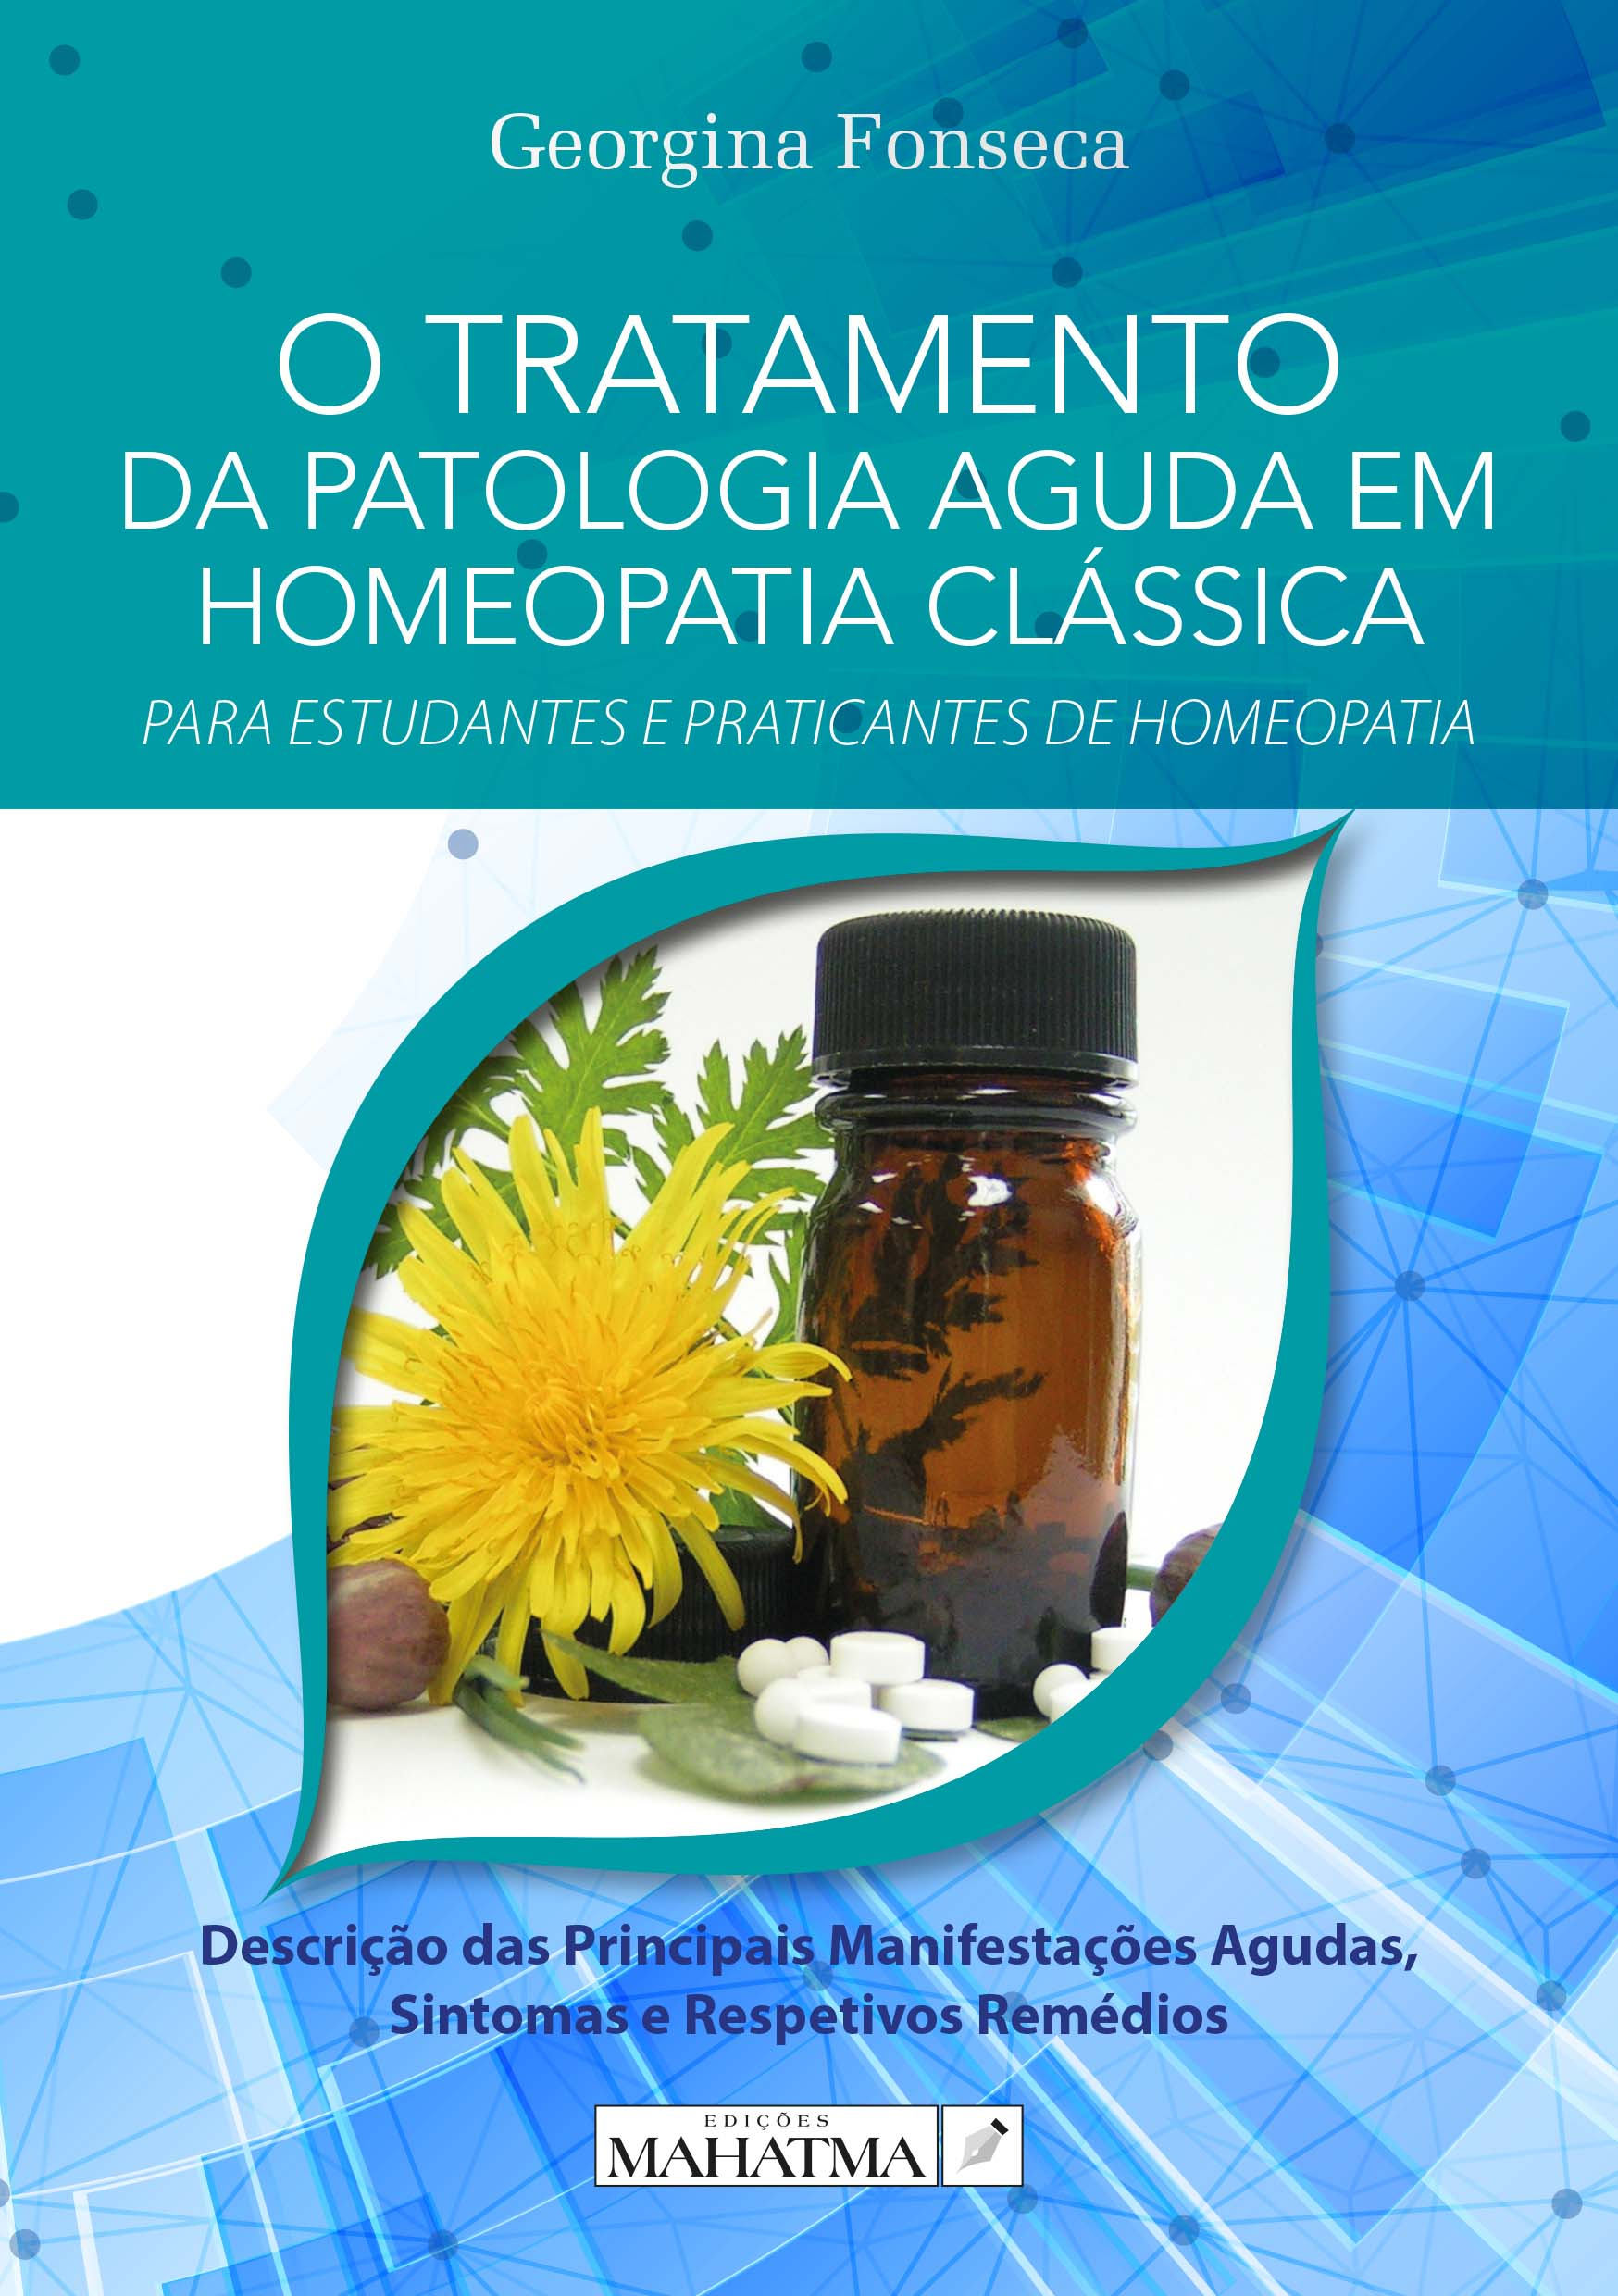 O Tratamento da Patologia Aguda em Homeopatia Clássica